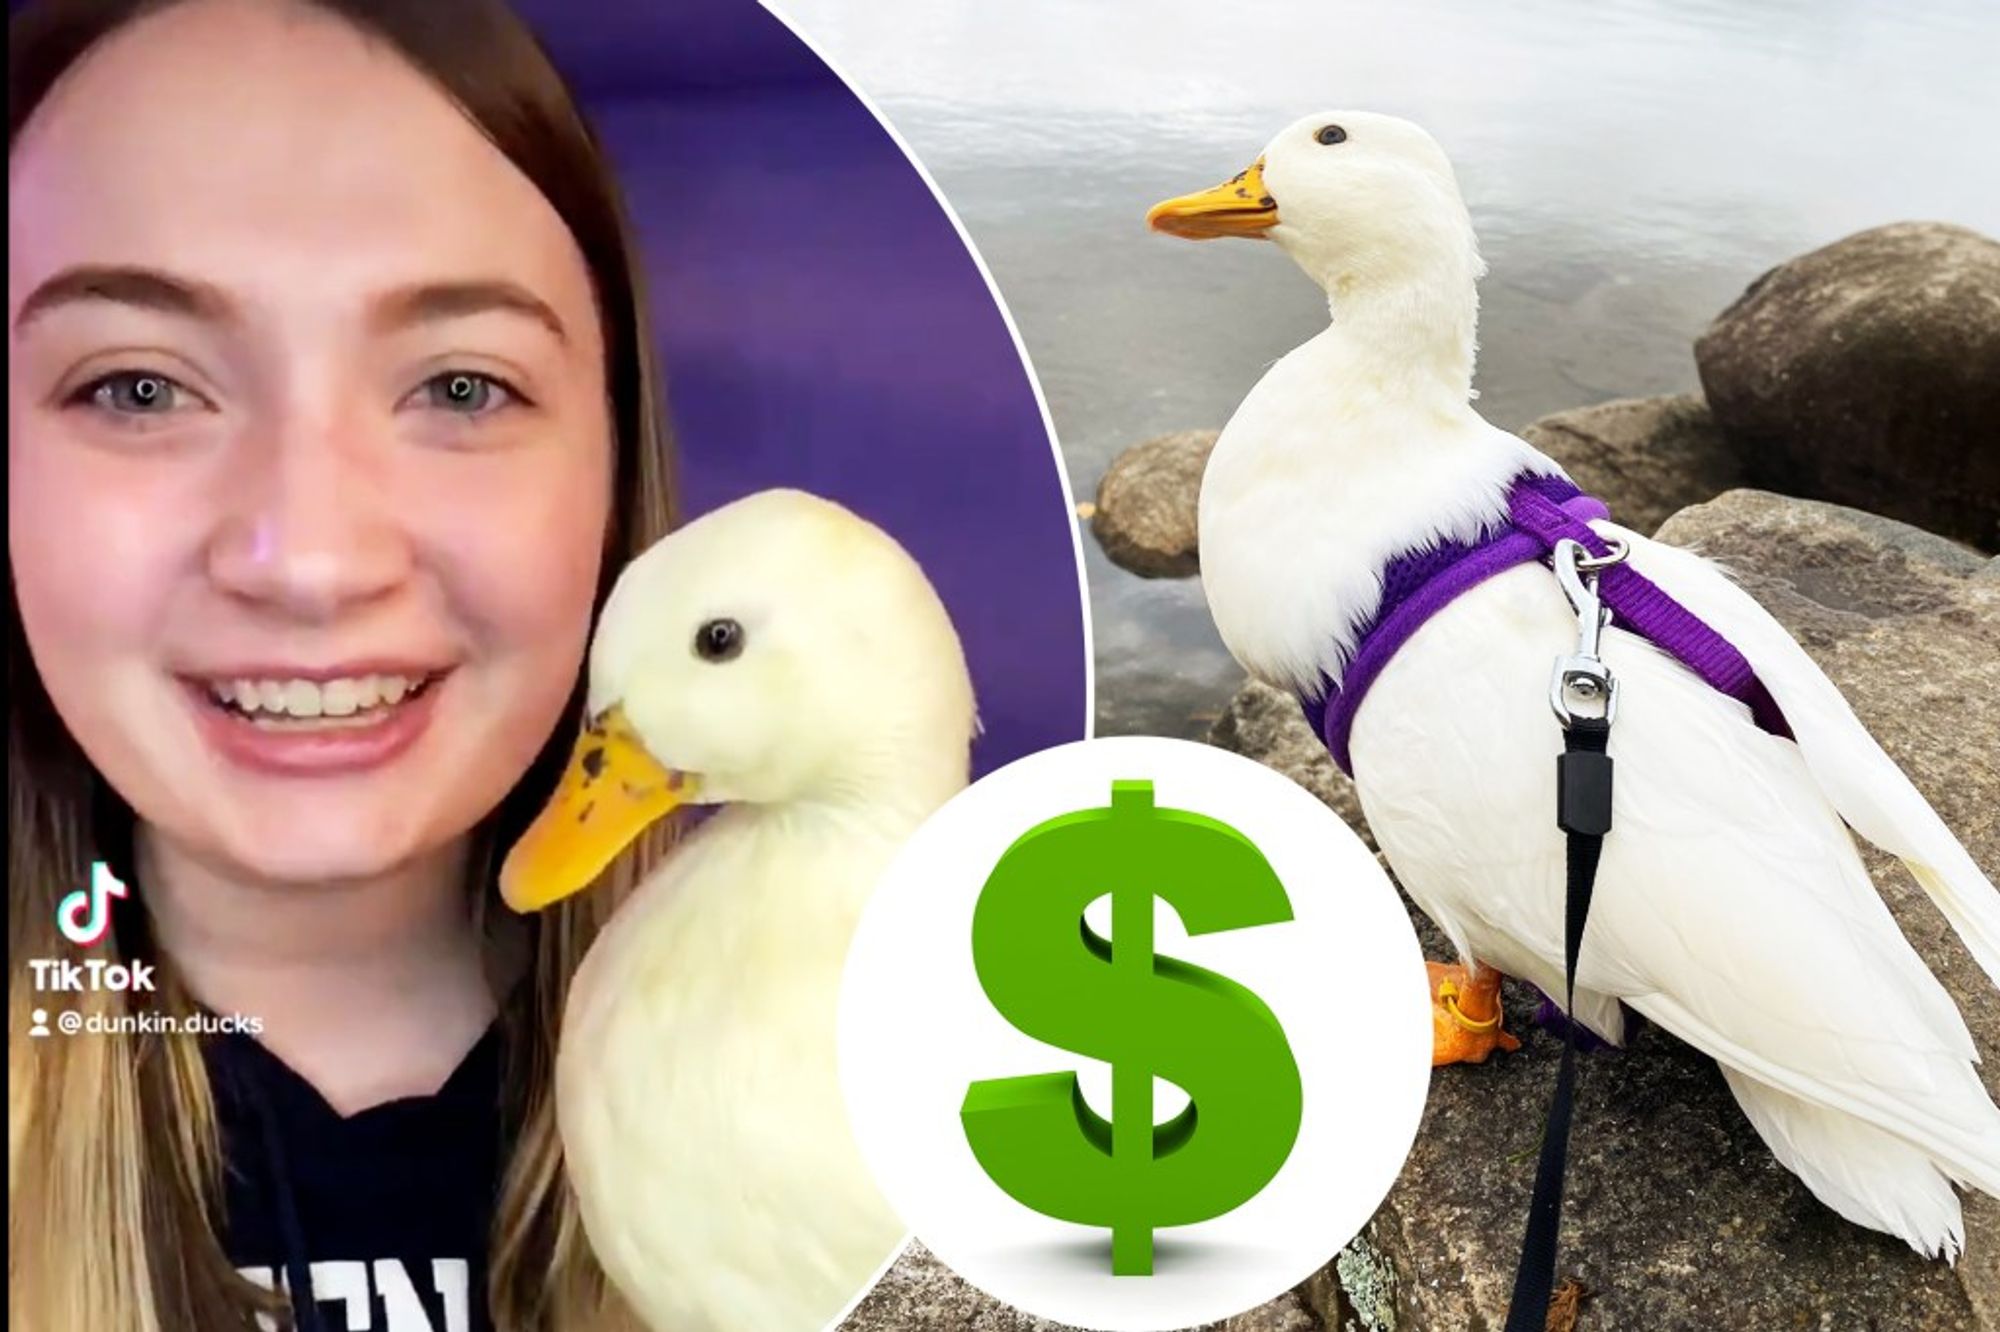 Viral TikTok superstar Dunkin Ducks earns $4,500 a month